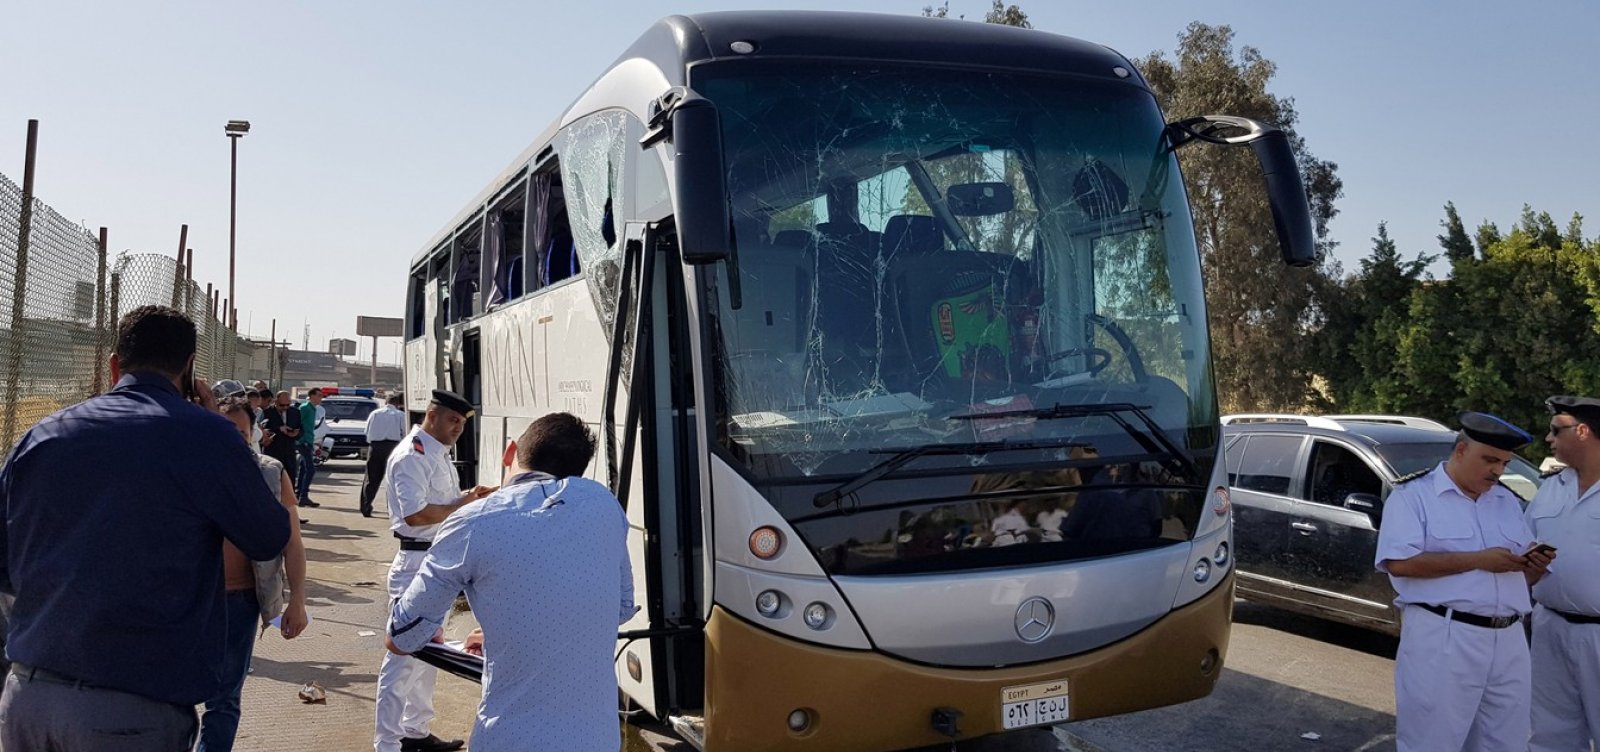 Bomba explode próximo a ônibus de turismo nos arredores de pirâmides no Egito